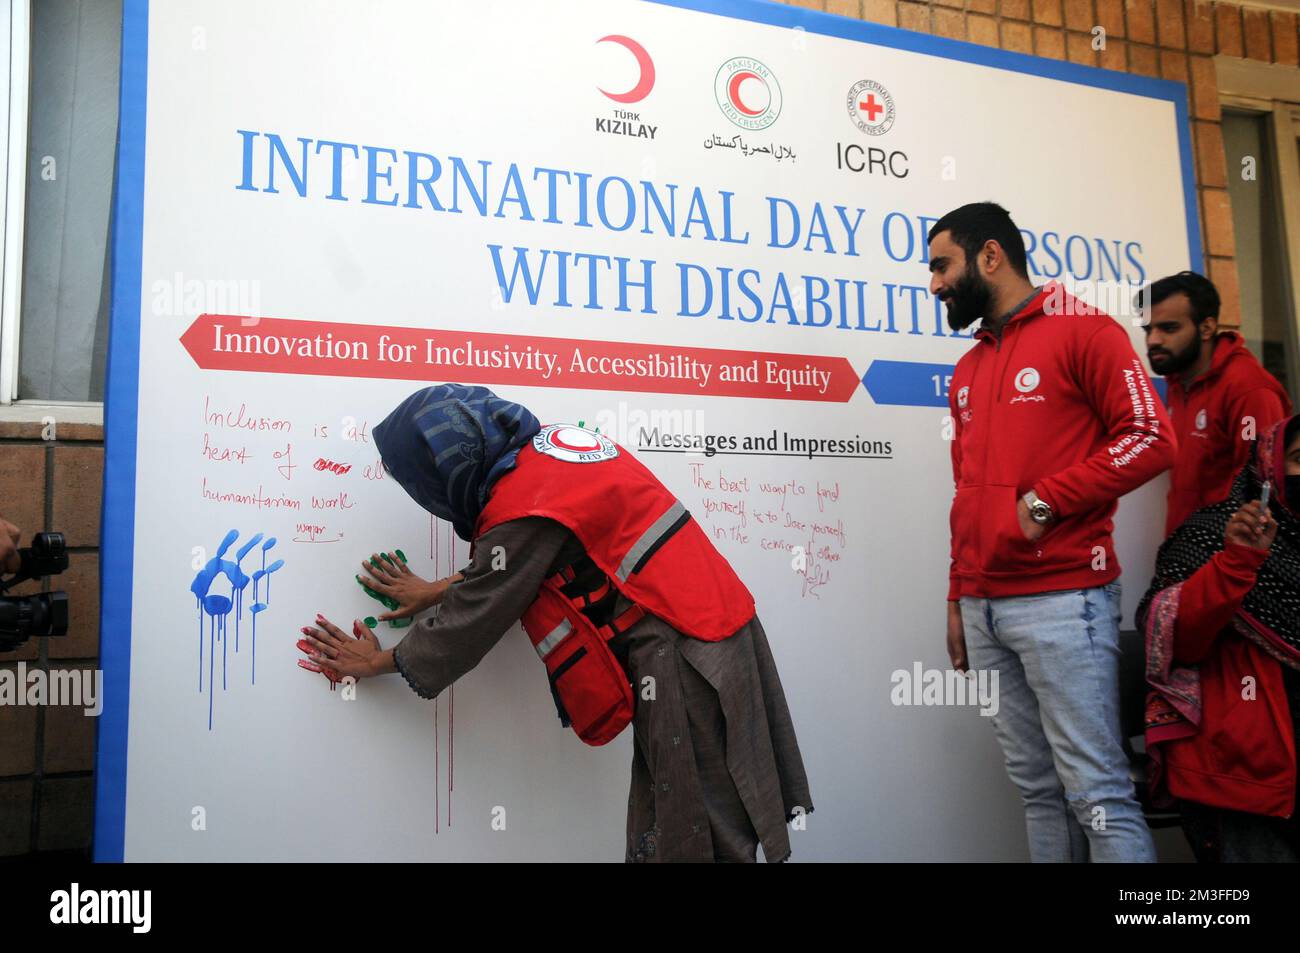 ISLAMABAD, AU PAKISTAN, la Journée internationale des personnes handicapées a été observée aujourd'hui dans le monde entier, qui vise à mettre en lumière les problèmes rencontrés b Banque D'Images